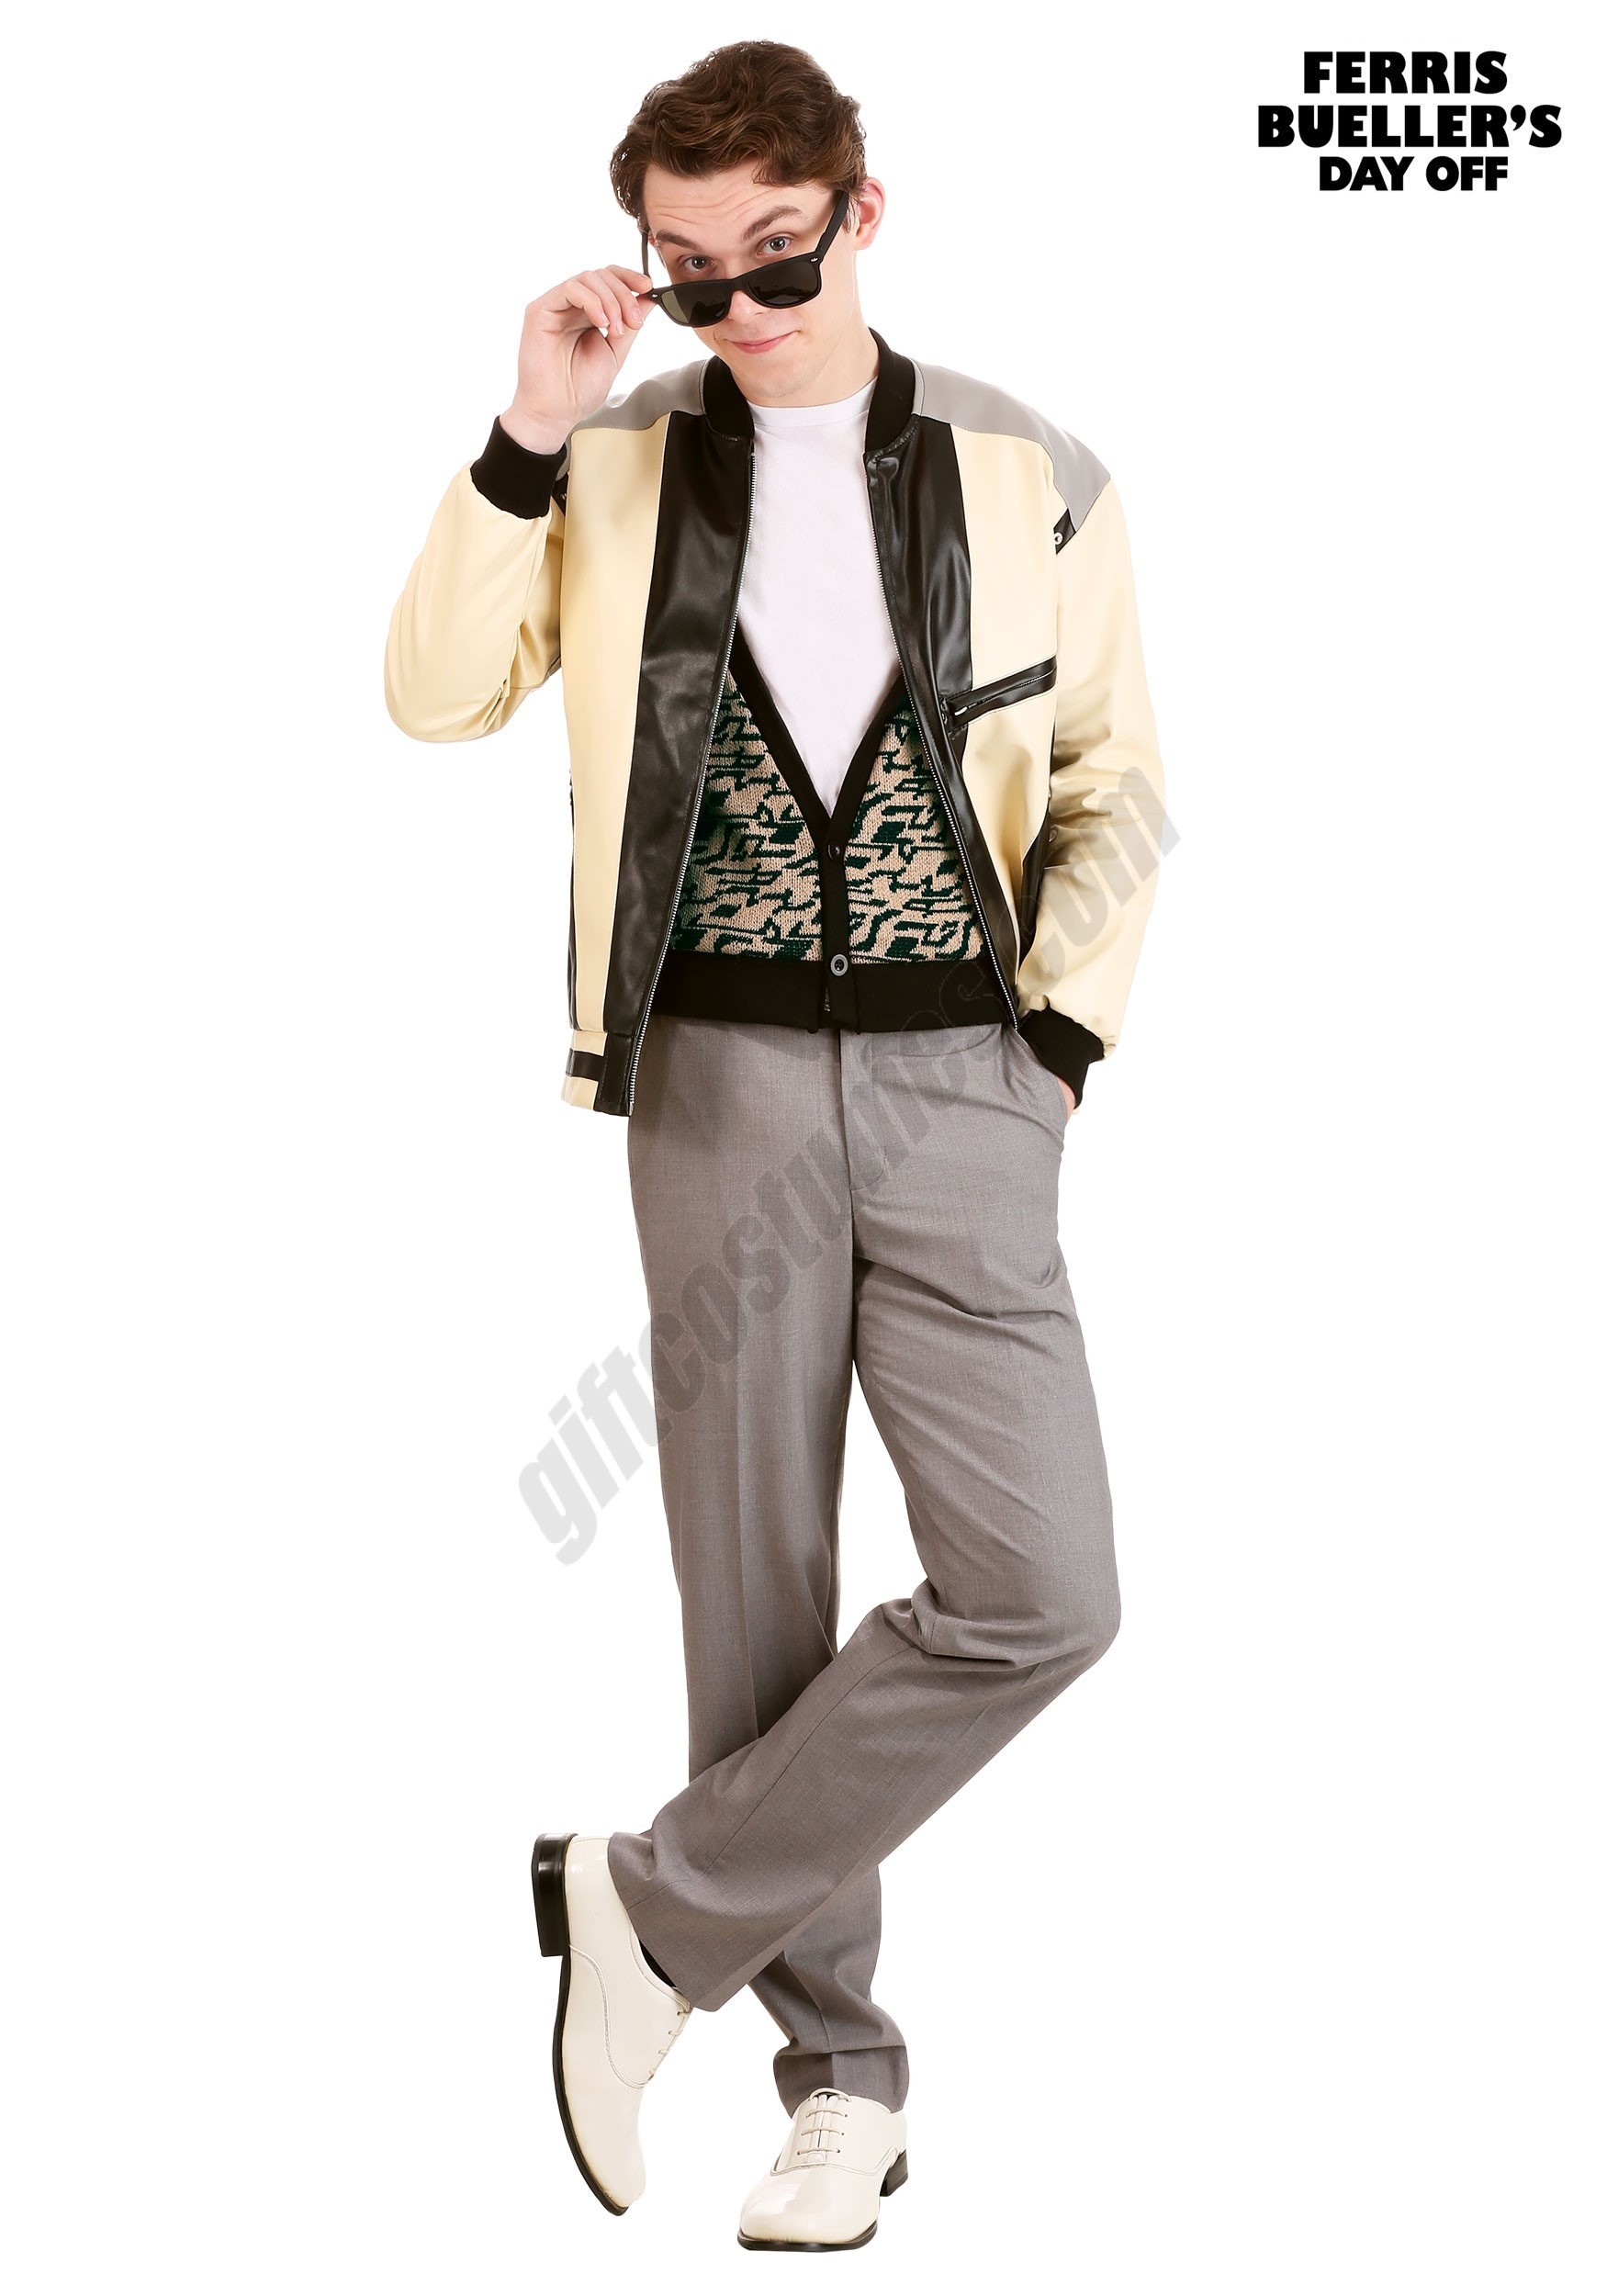 Ferris Bueller Costume For Men - Ferris Bueller Costume For Men